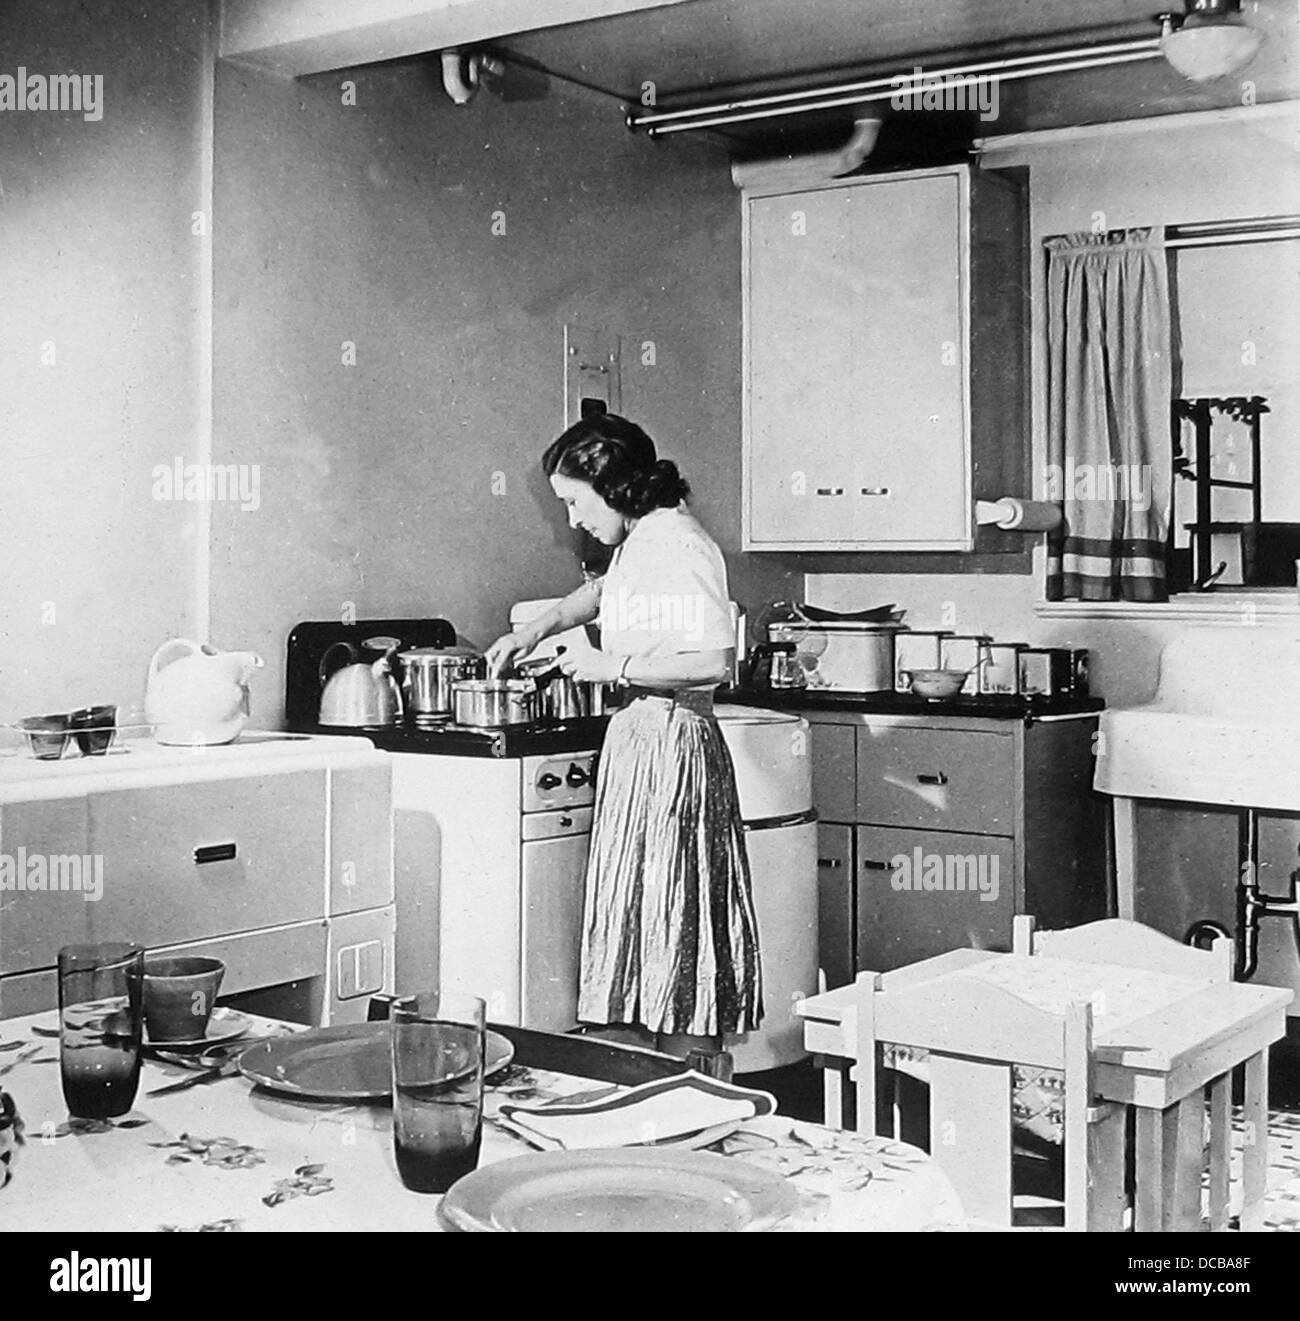 Une cuisine électrique moderne probablement 1940 Banque D'Images